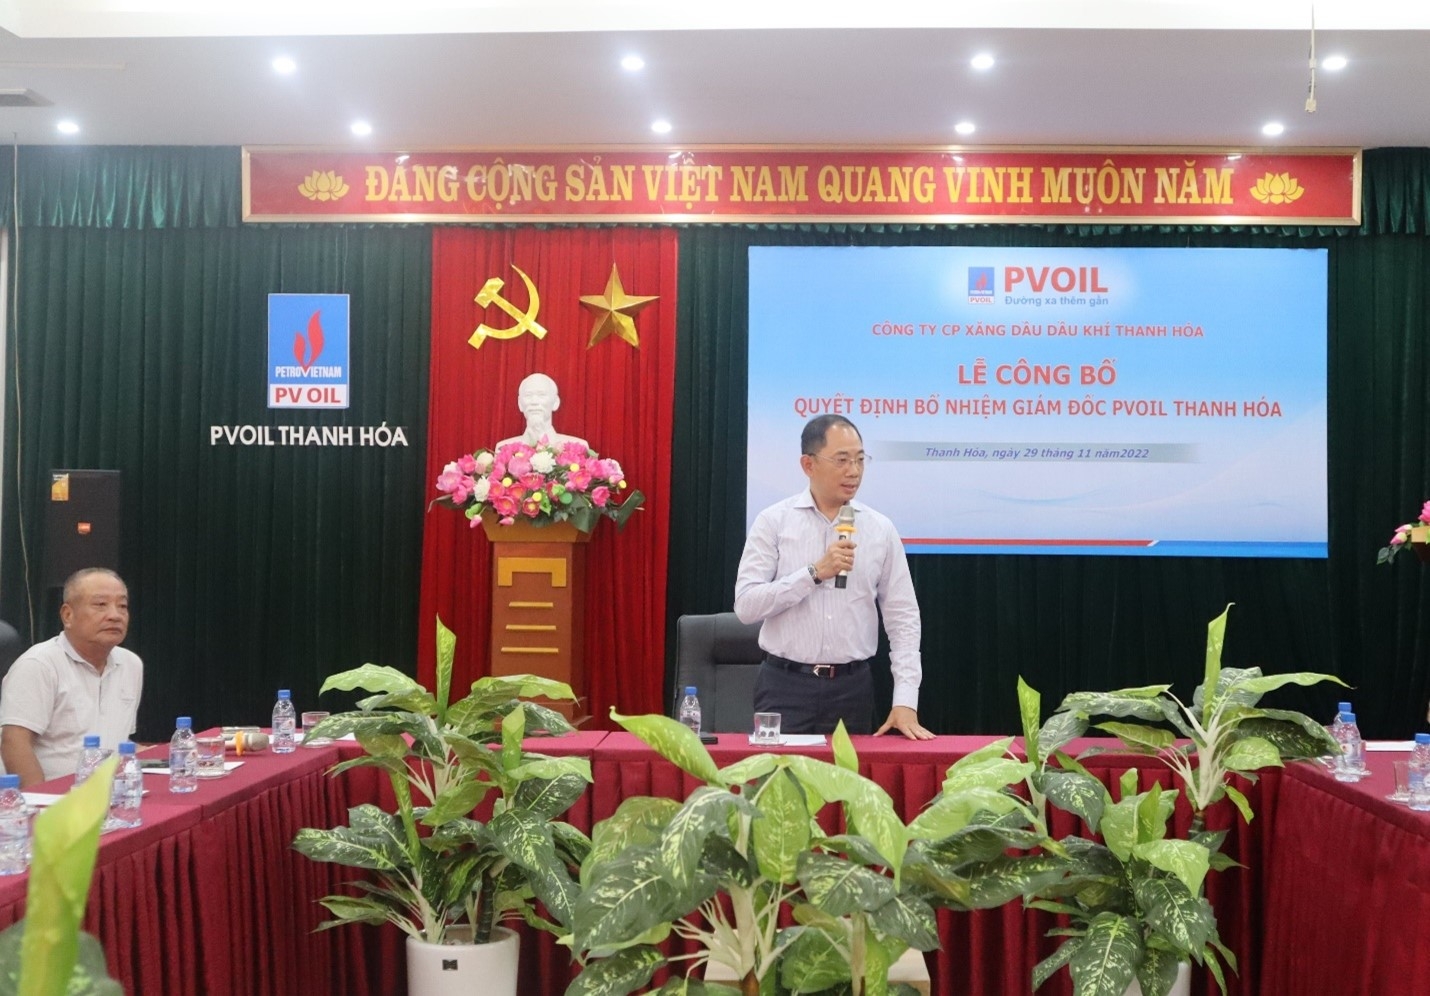 Ông Cao Hoài Dương – Bí thư Đảng ủy, Chủ tịch HĐQT PVOIL phát biểu tại Lễ công bố Quyết định bổ nhiệm Giám đốc PVOIL Thanh Hoá